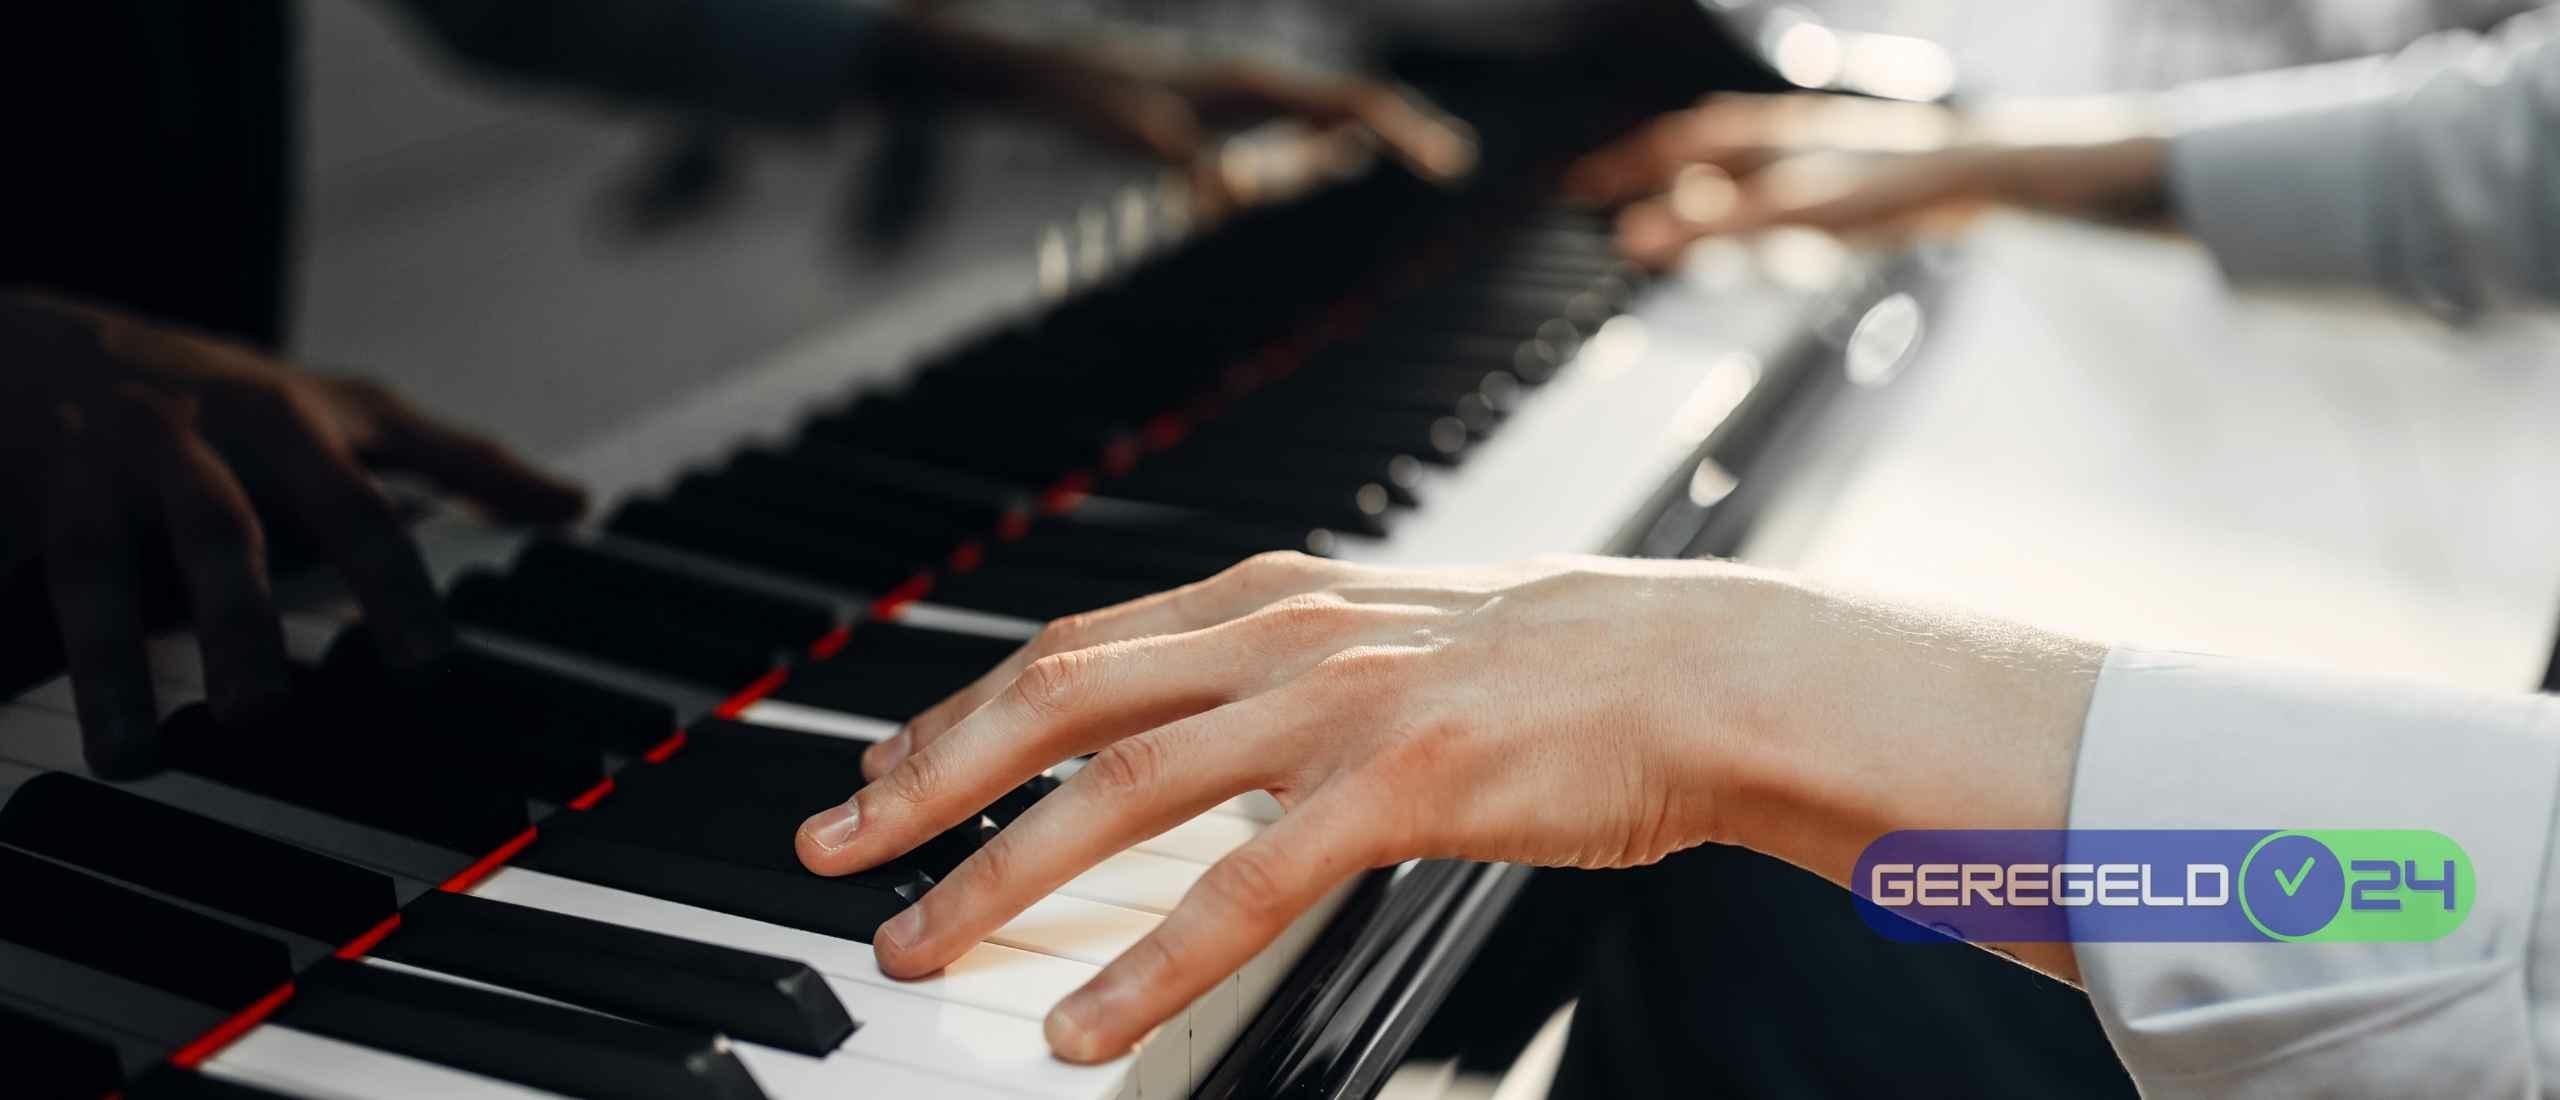 Cursus Piano Spelen: Leer Snel en Efficiënt Piano Spelen